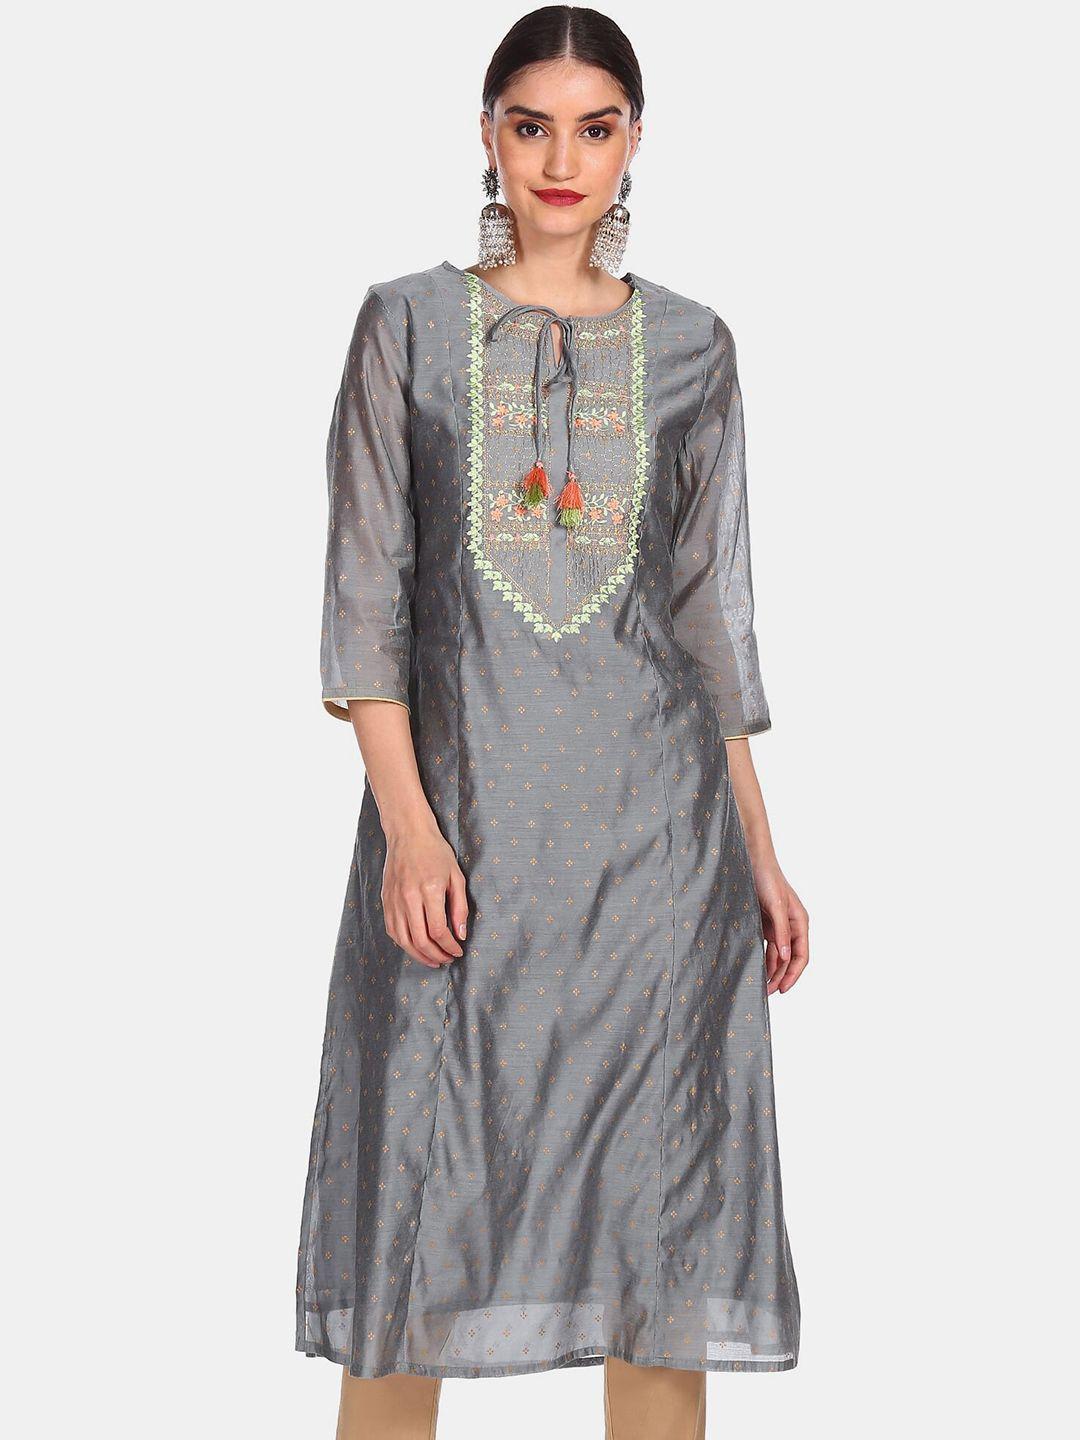 anahi women grey ethnic motifs embroidered keyhole neck flared sleeves kurta